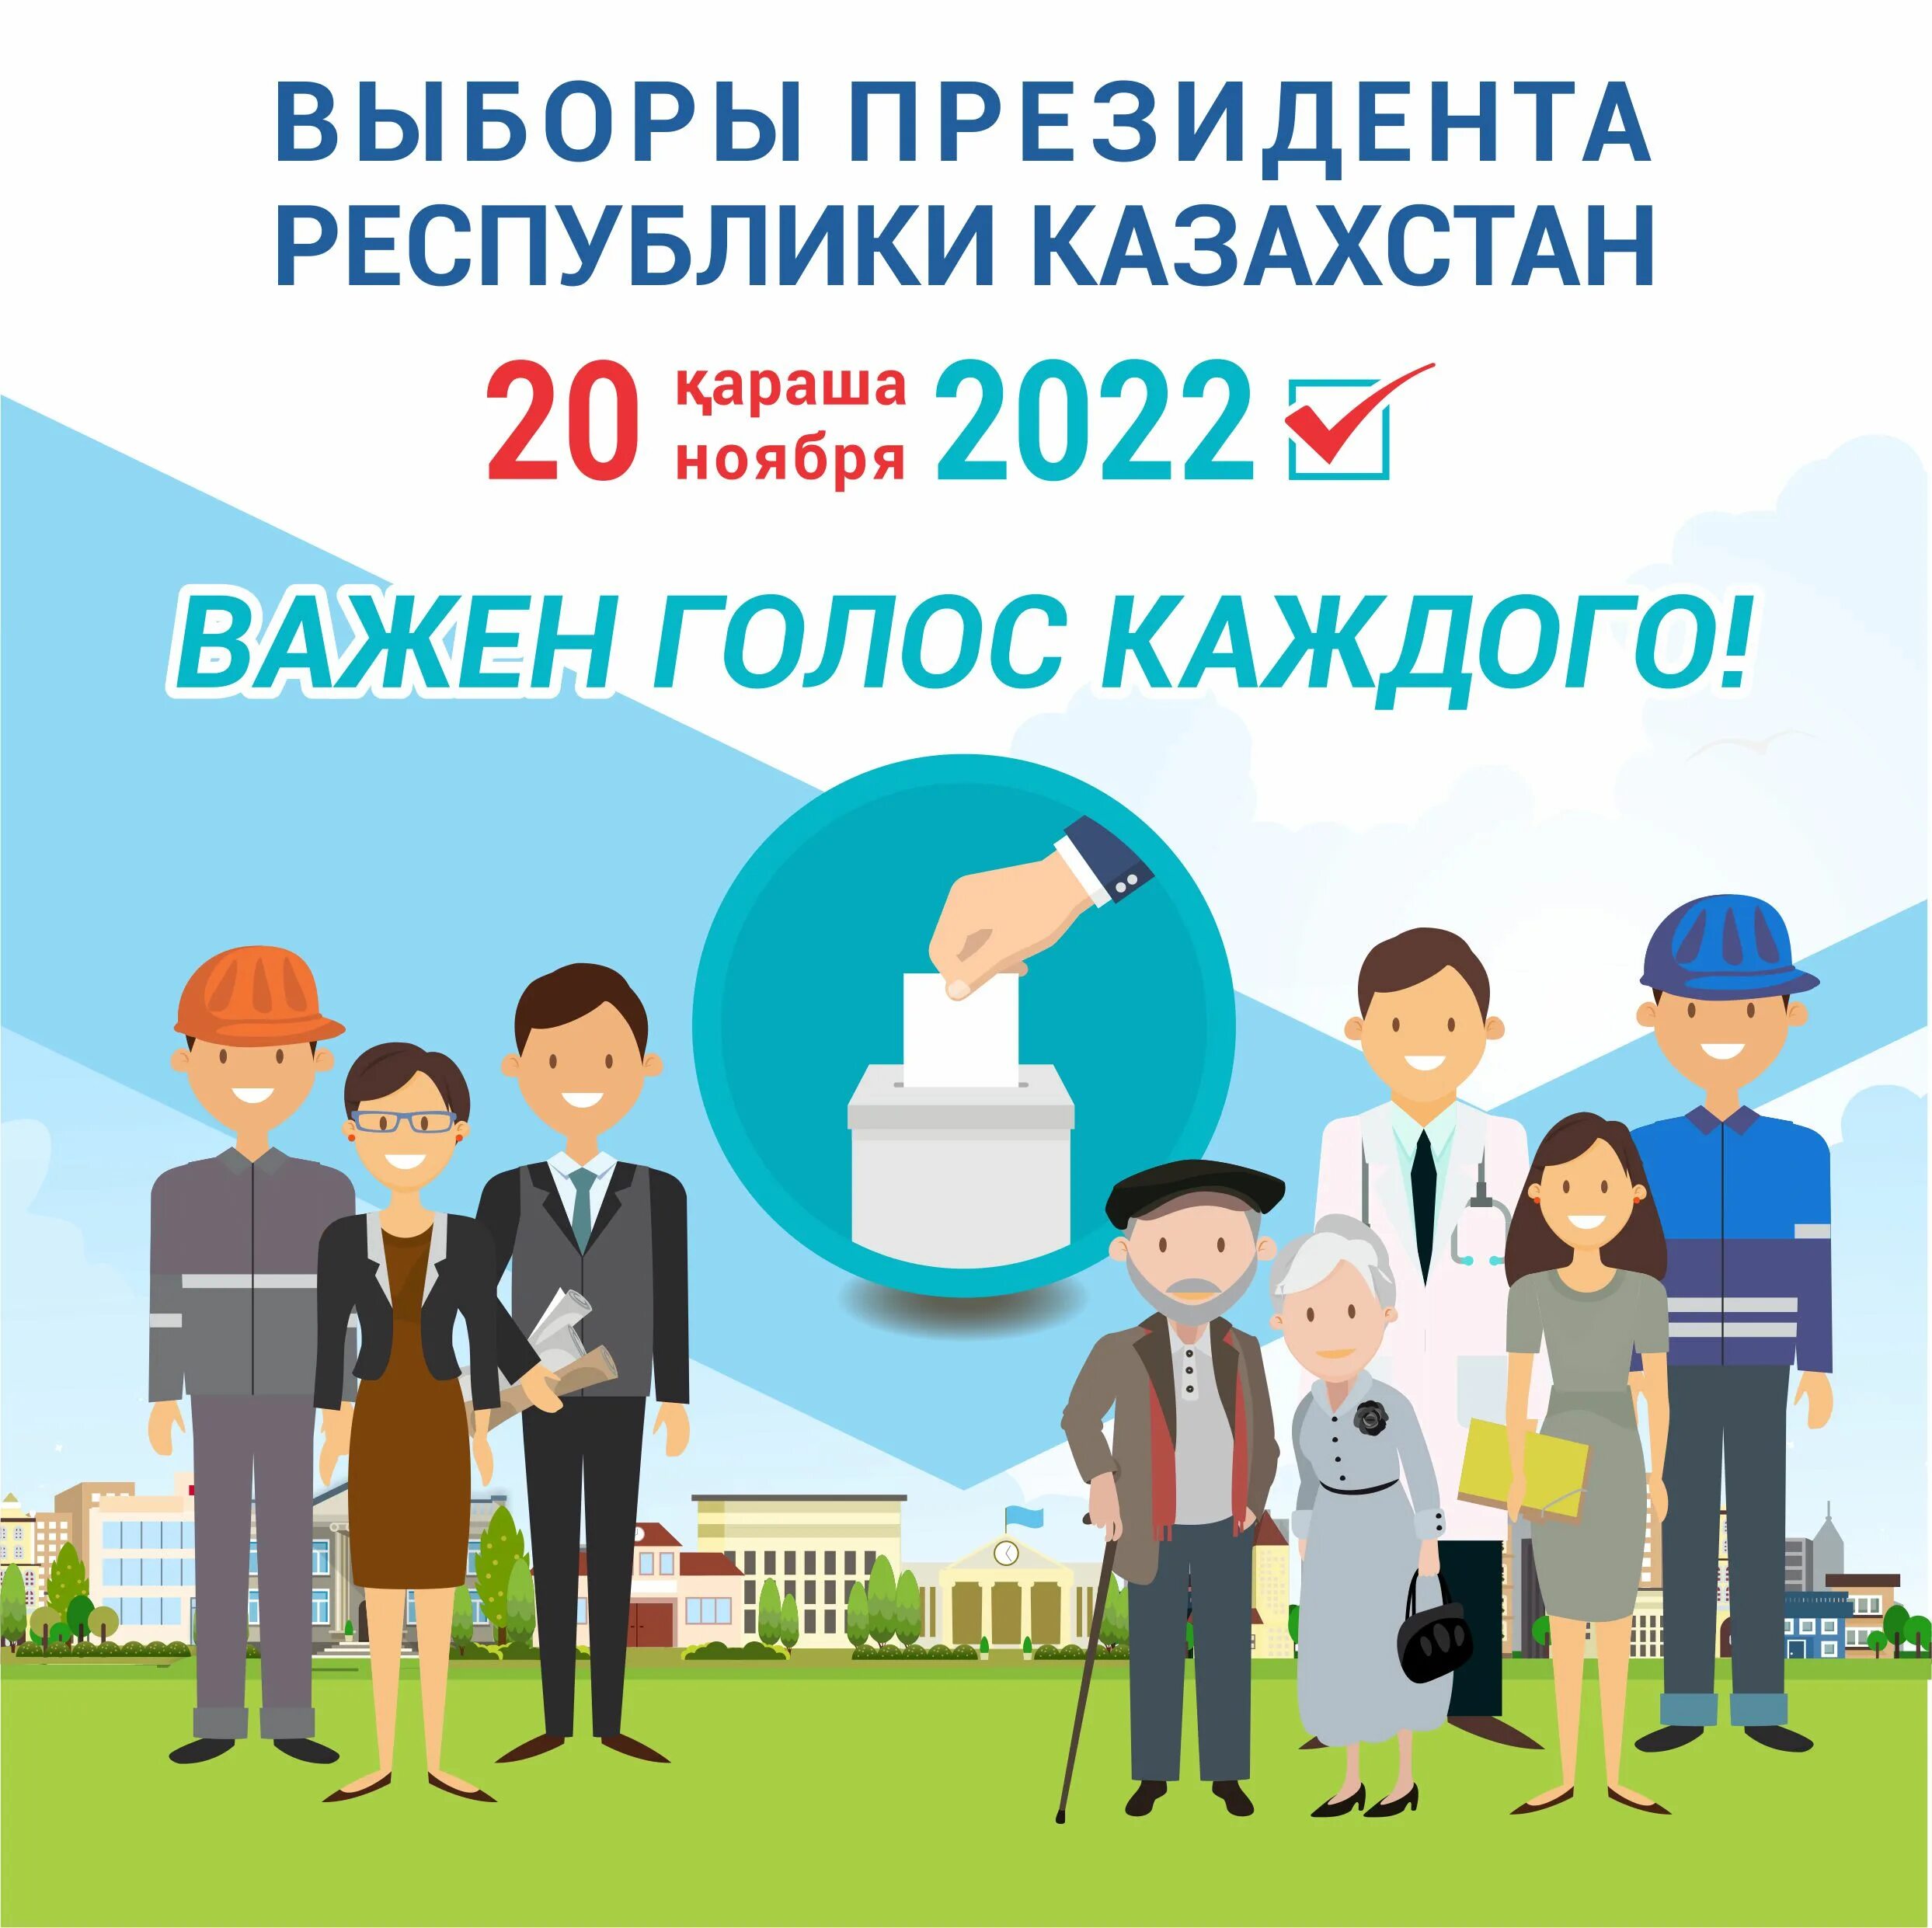 Выборы президента Казахстана. Выборы в Казахстане в 2022. Президентские выборы в Казахстане 2022.